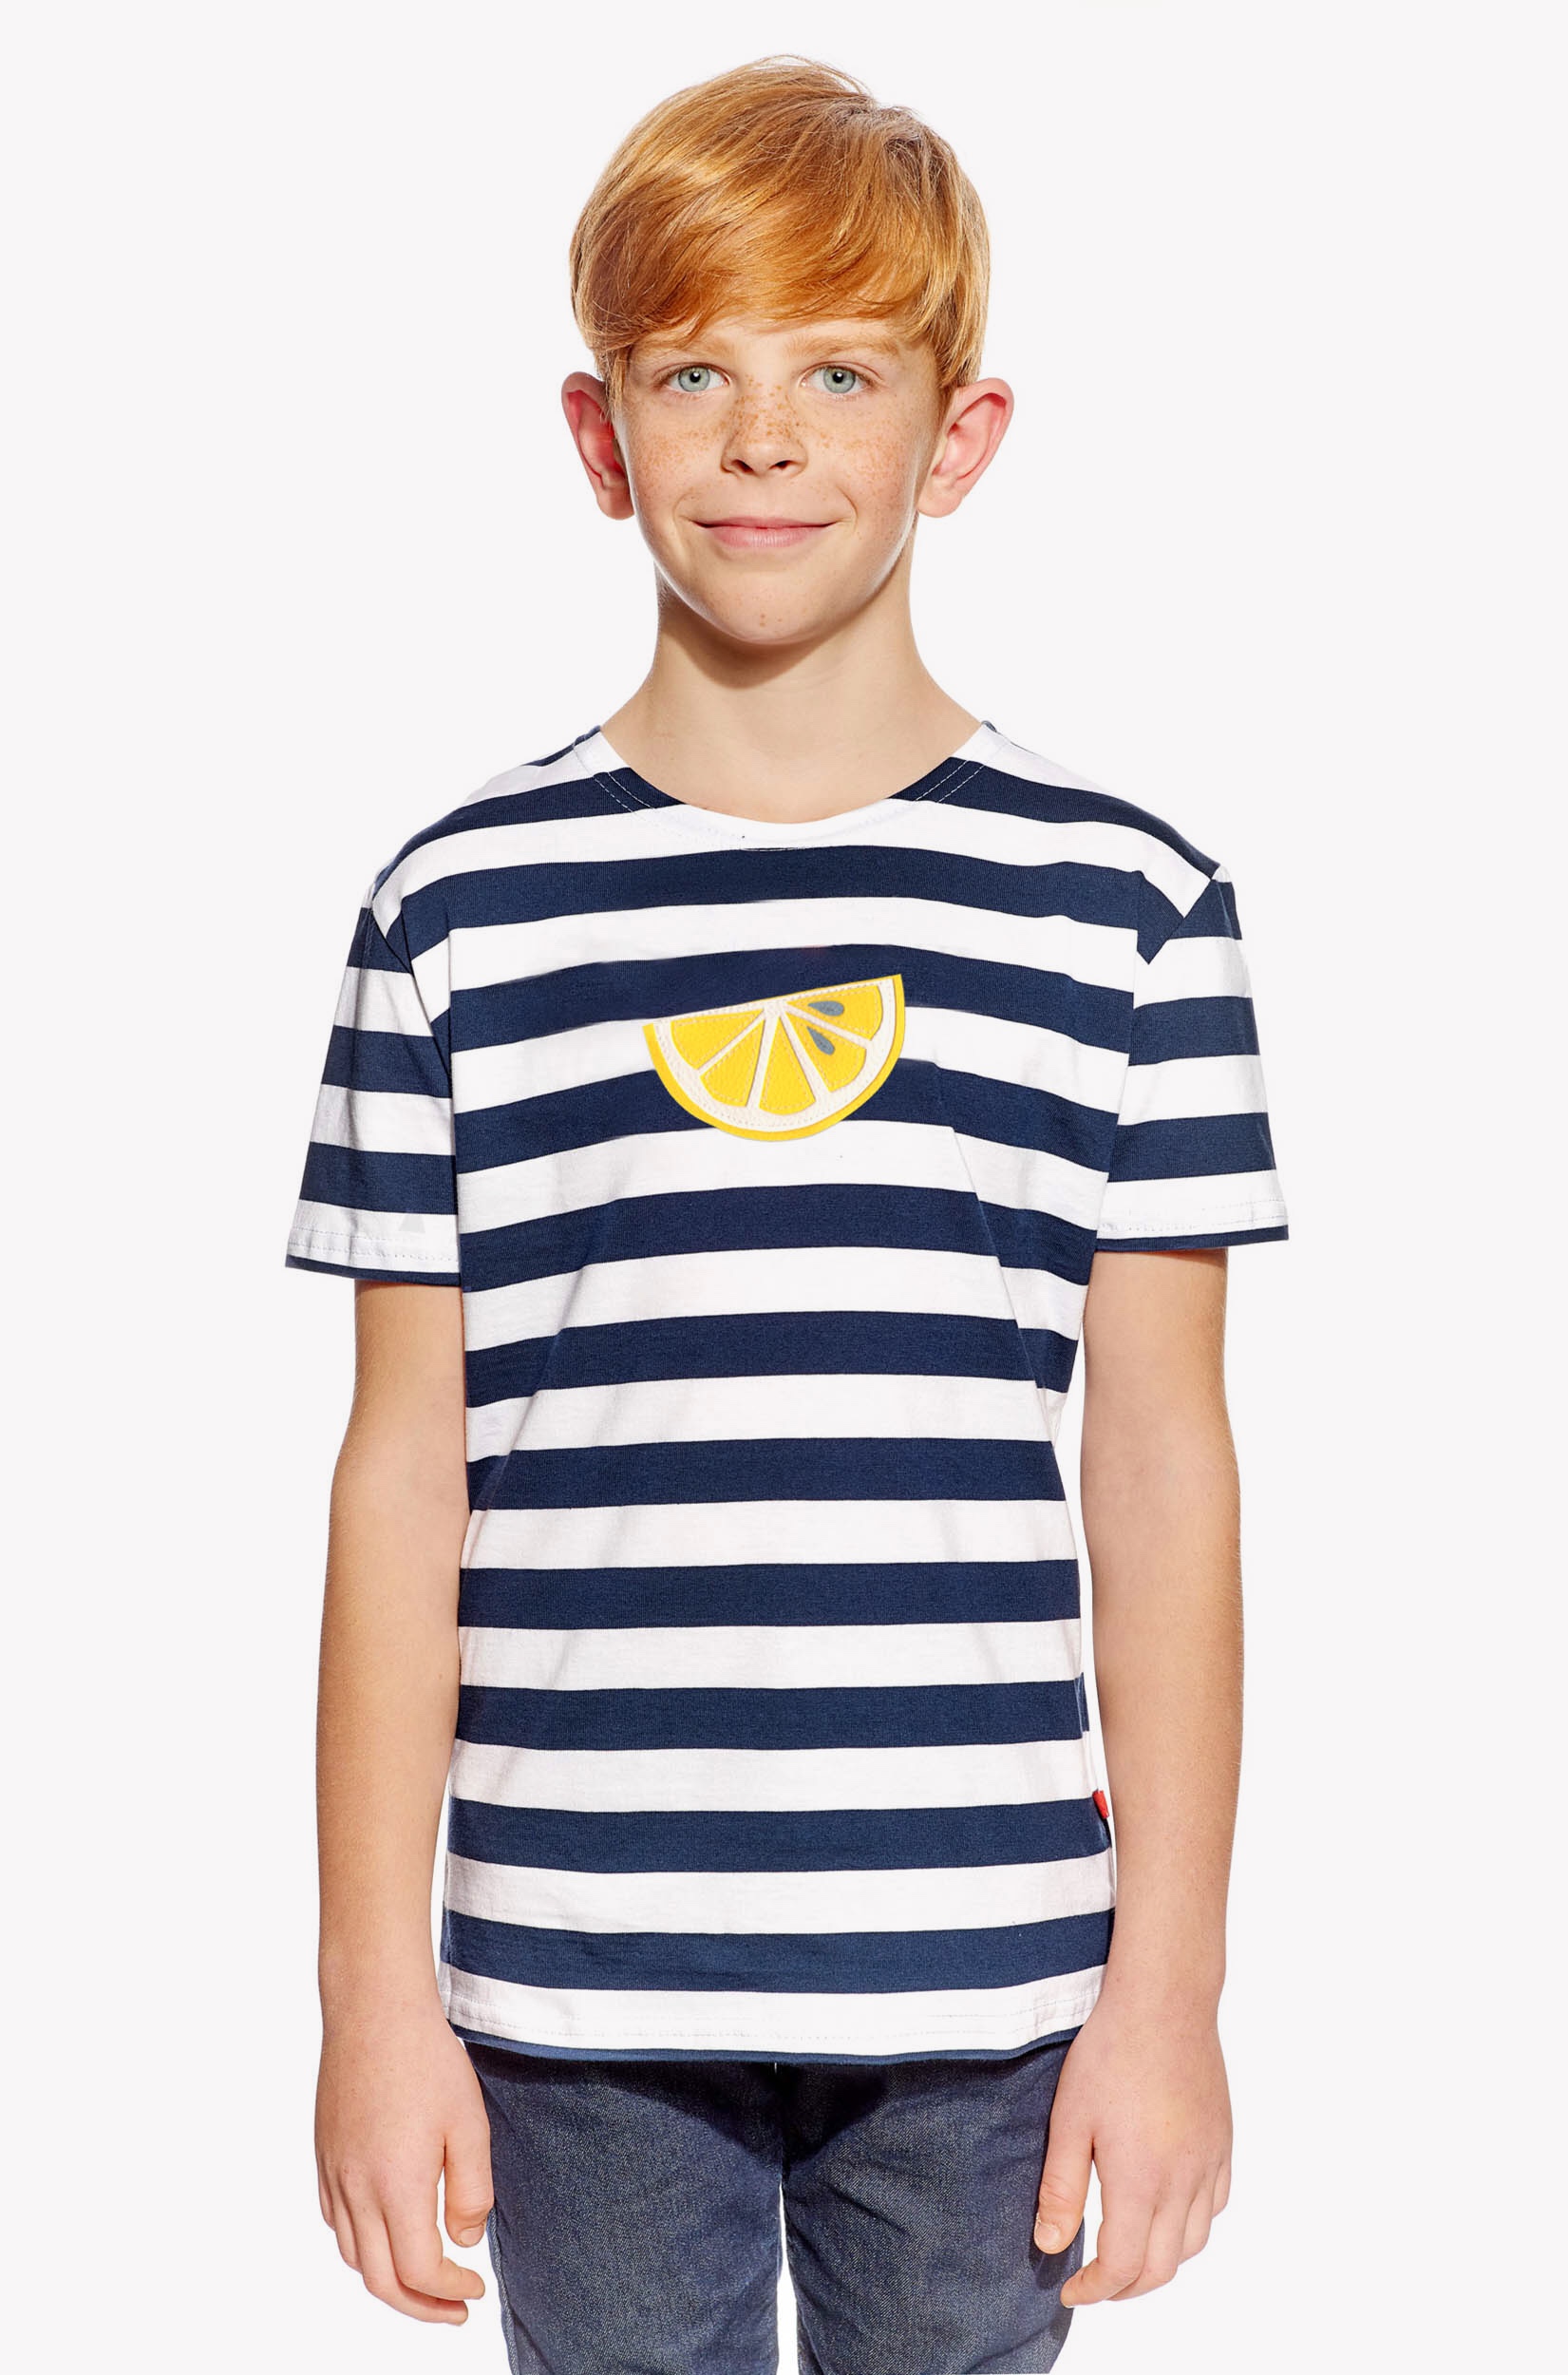 Shirt with lemon